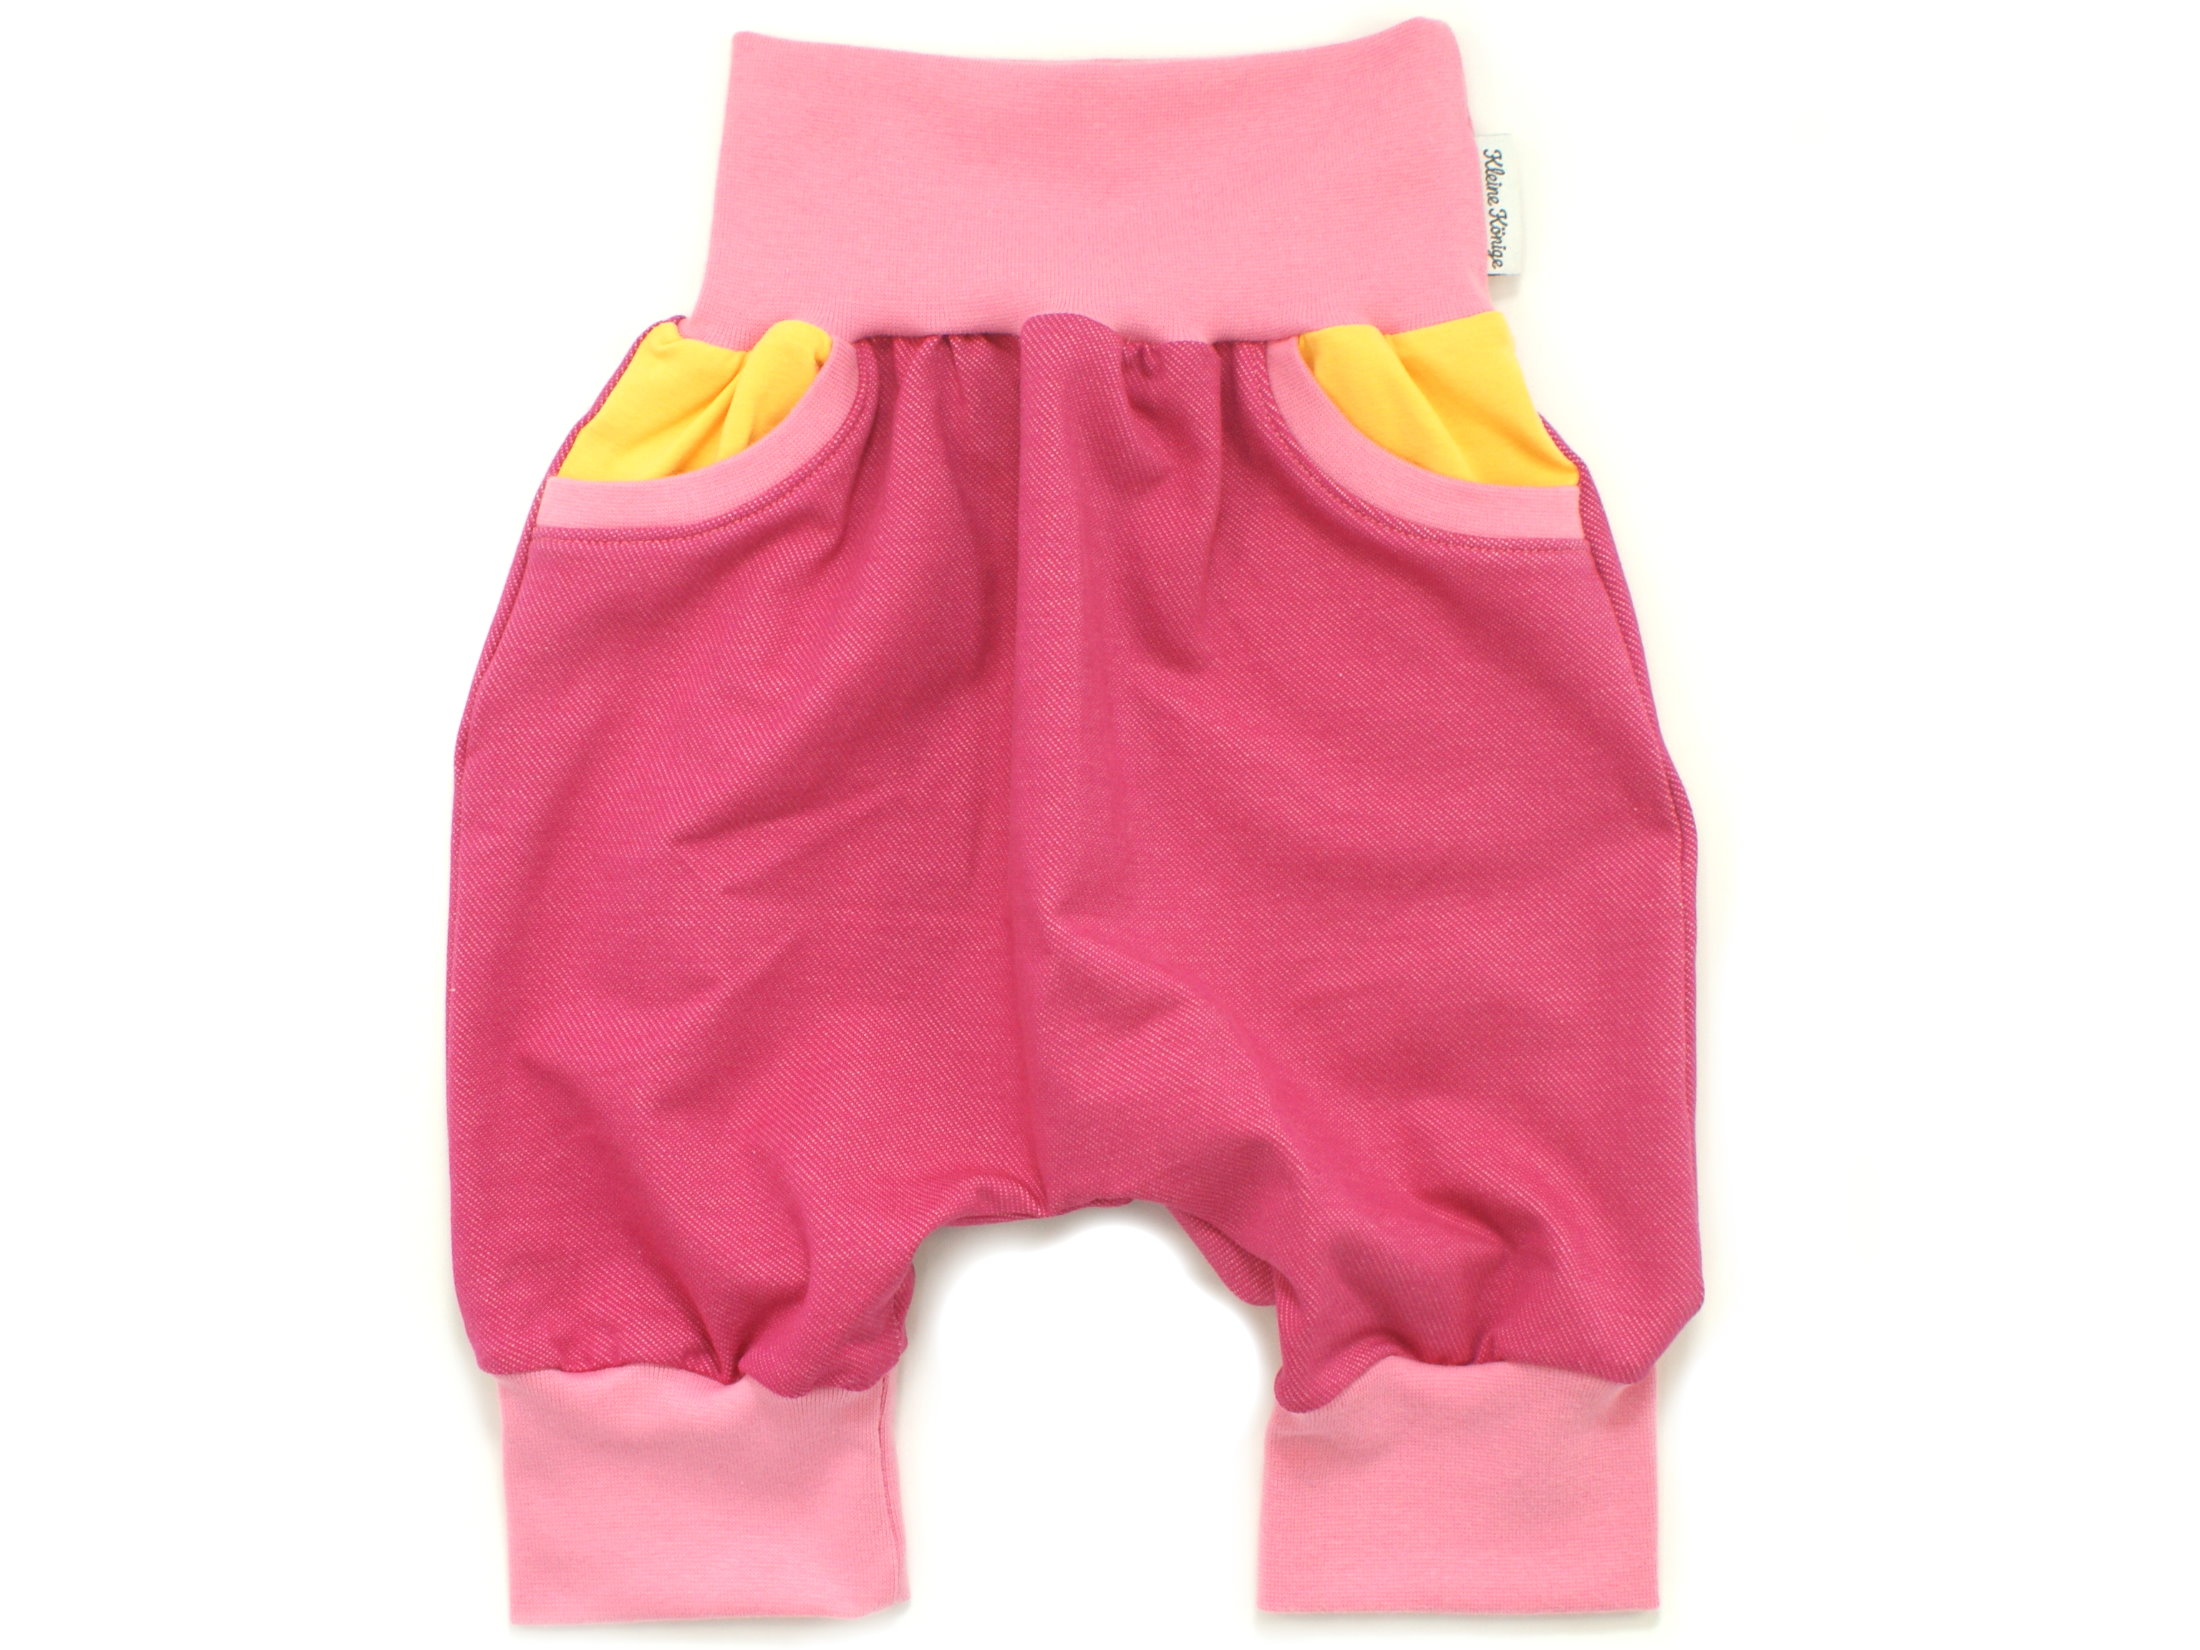 Kinder Bermuda-Shorts mit Taschen Jeansjersey pink gelb